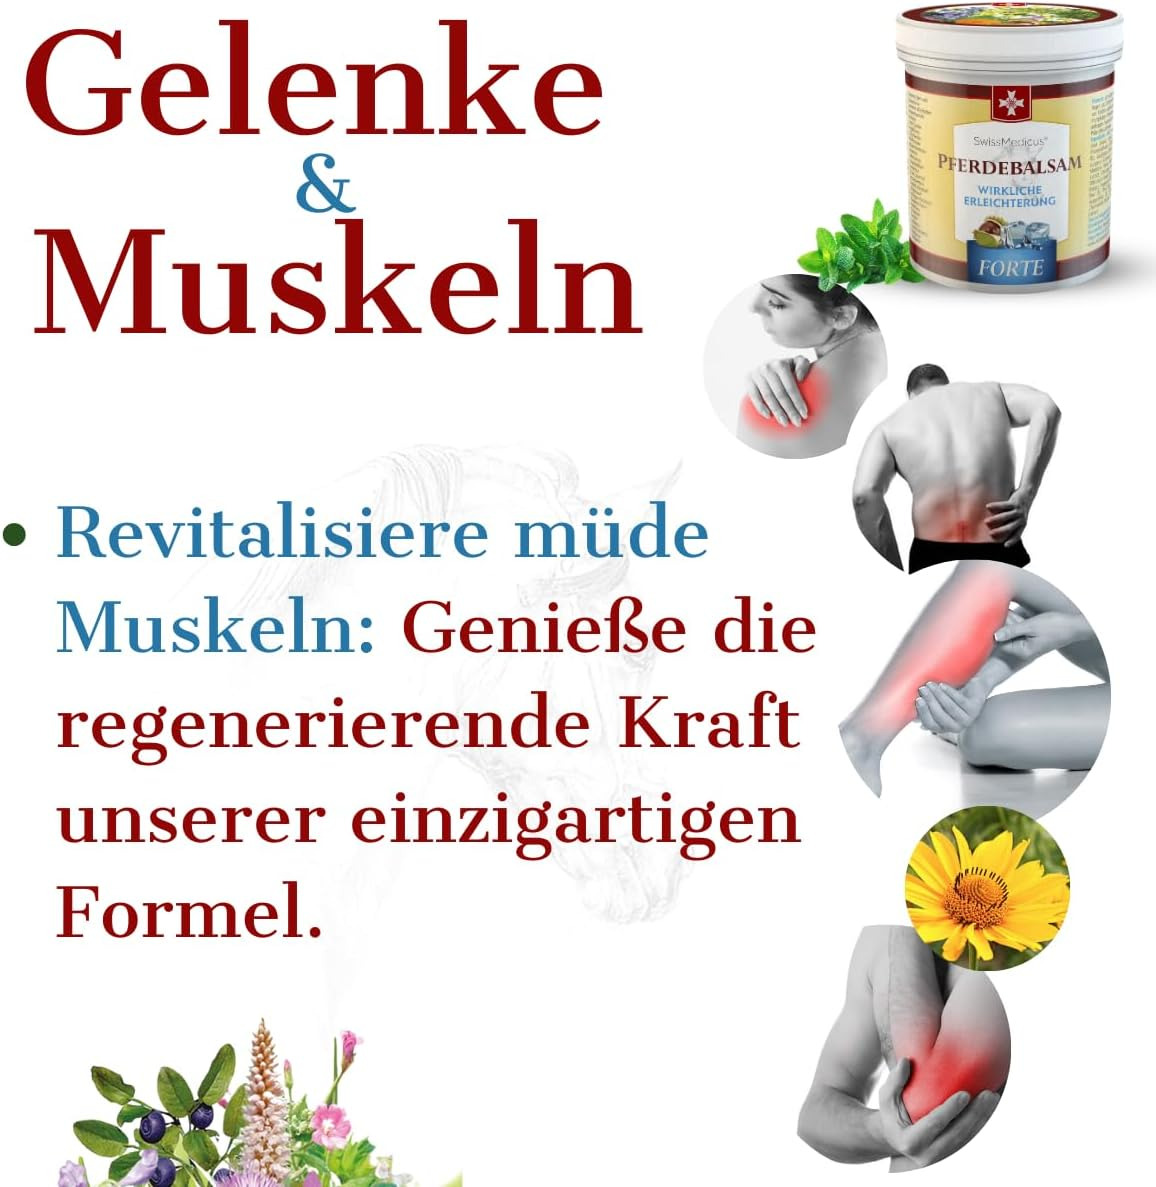 SwissMedicus Pferdebalsam Massage-gel mit 25 Kräuterextrakte (Beinwell, Rosskast